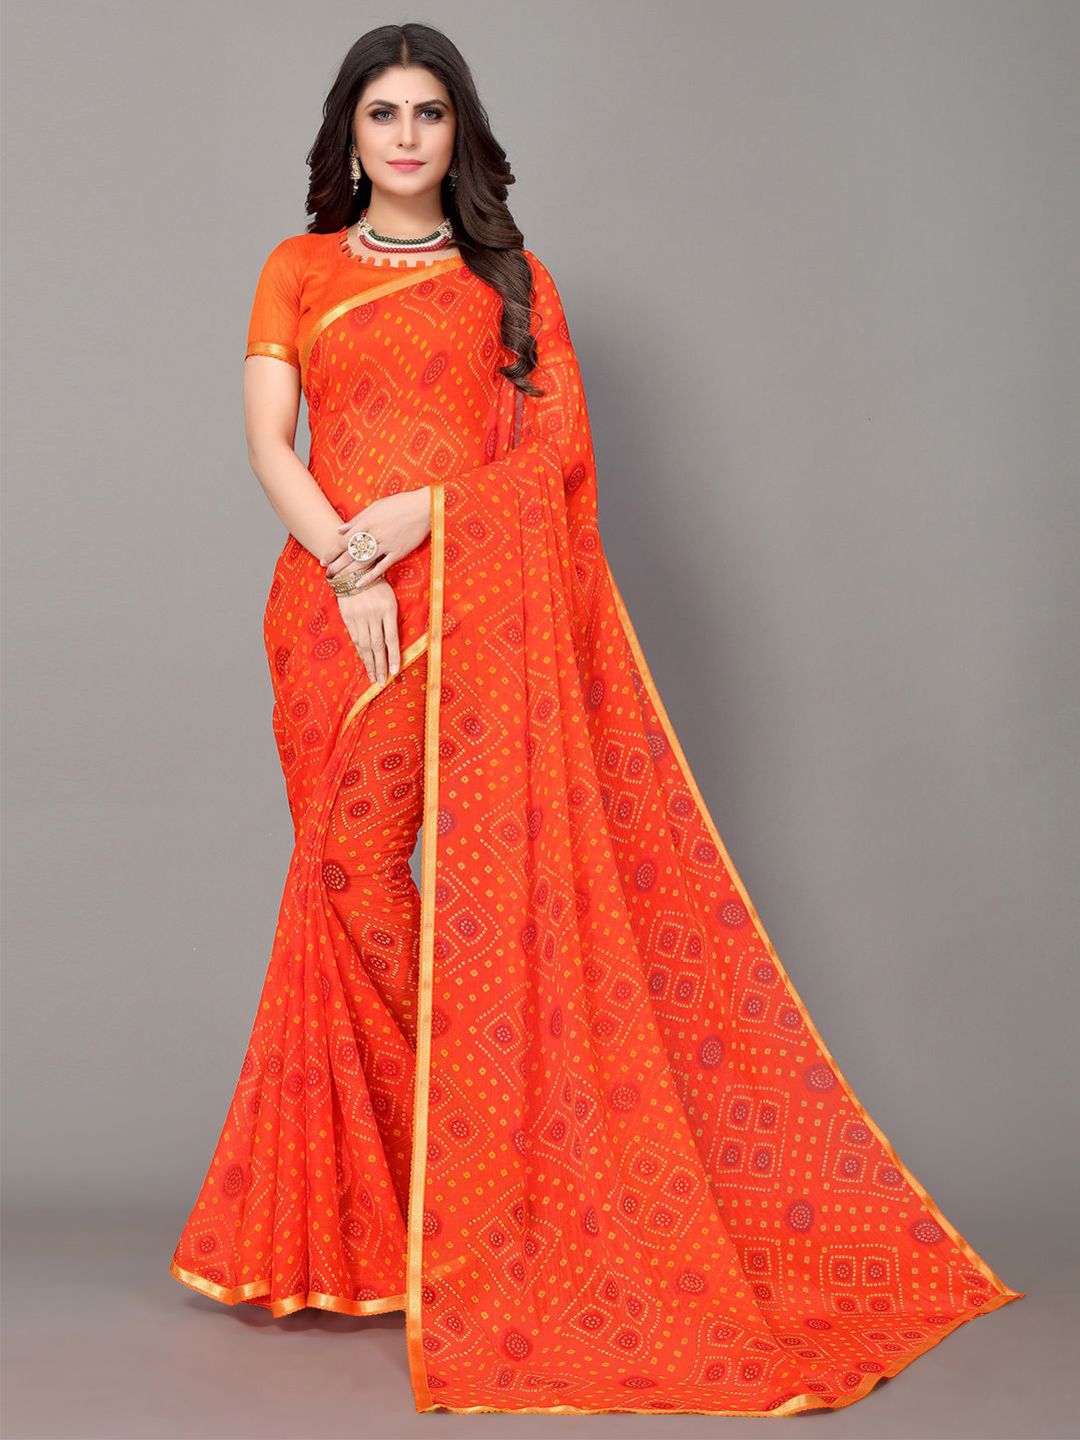 KALINI Orange & Yellow Bandhani Zari Bandhani Saree Price in India